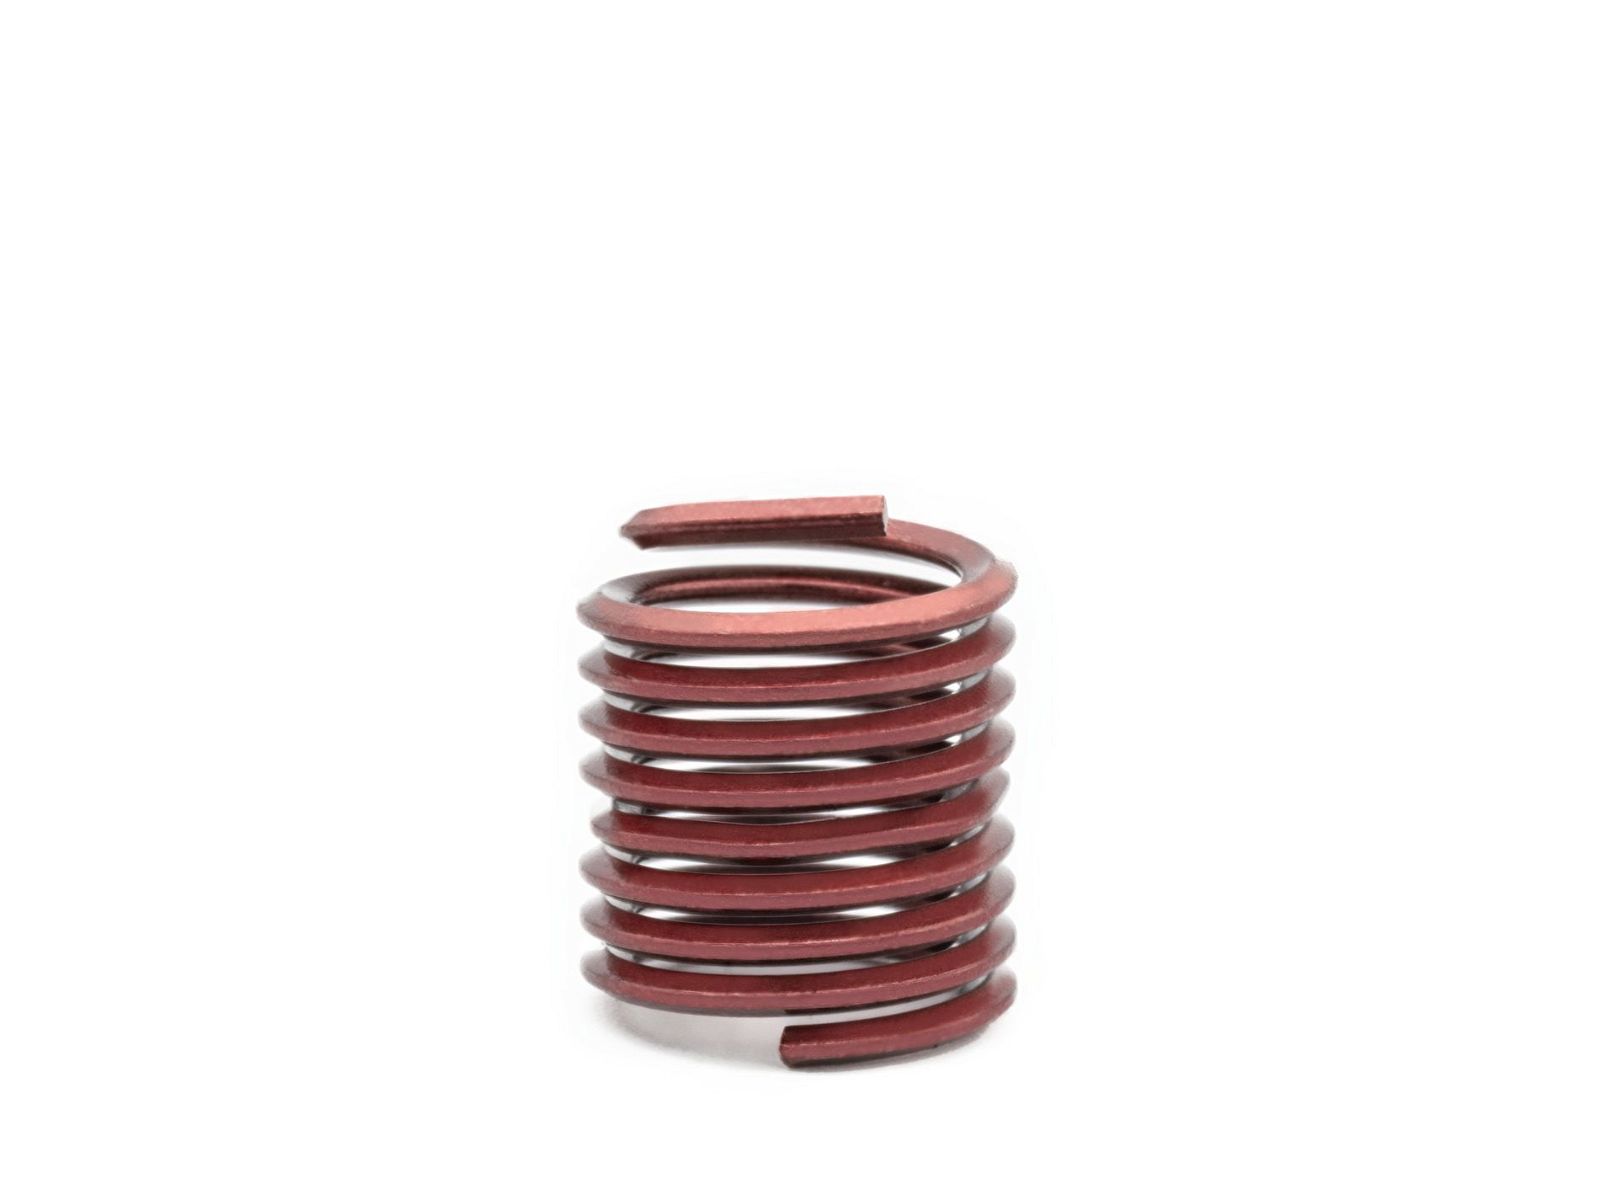 BaerCoil Wire Thread Inserts M 18 x 2.5 - 1.5 D (27 mm) - screw grip (screw locking) - 10 pcs.